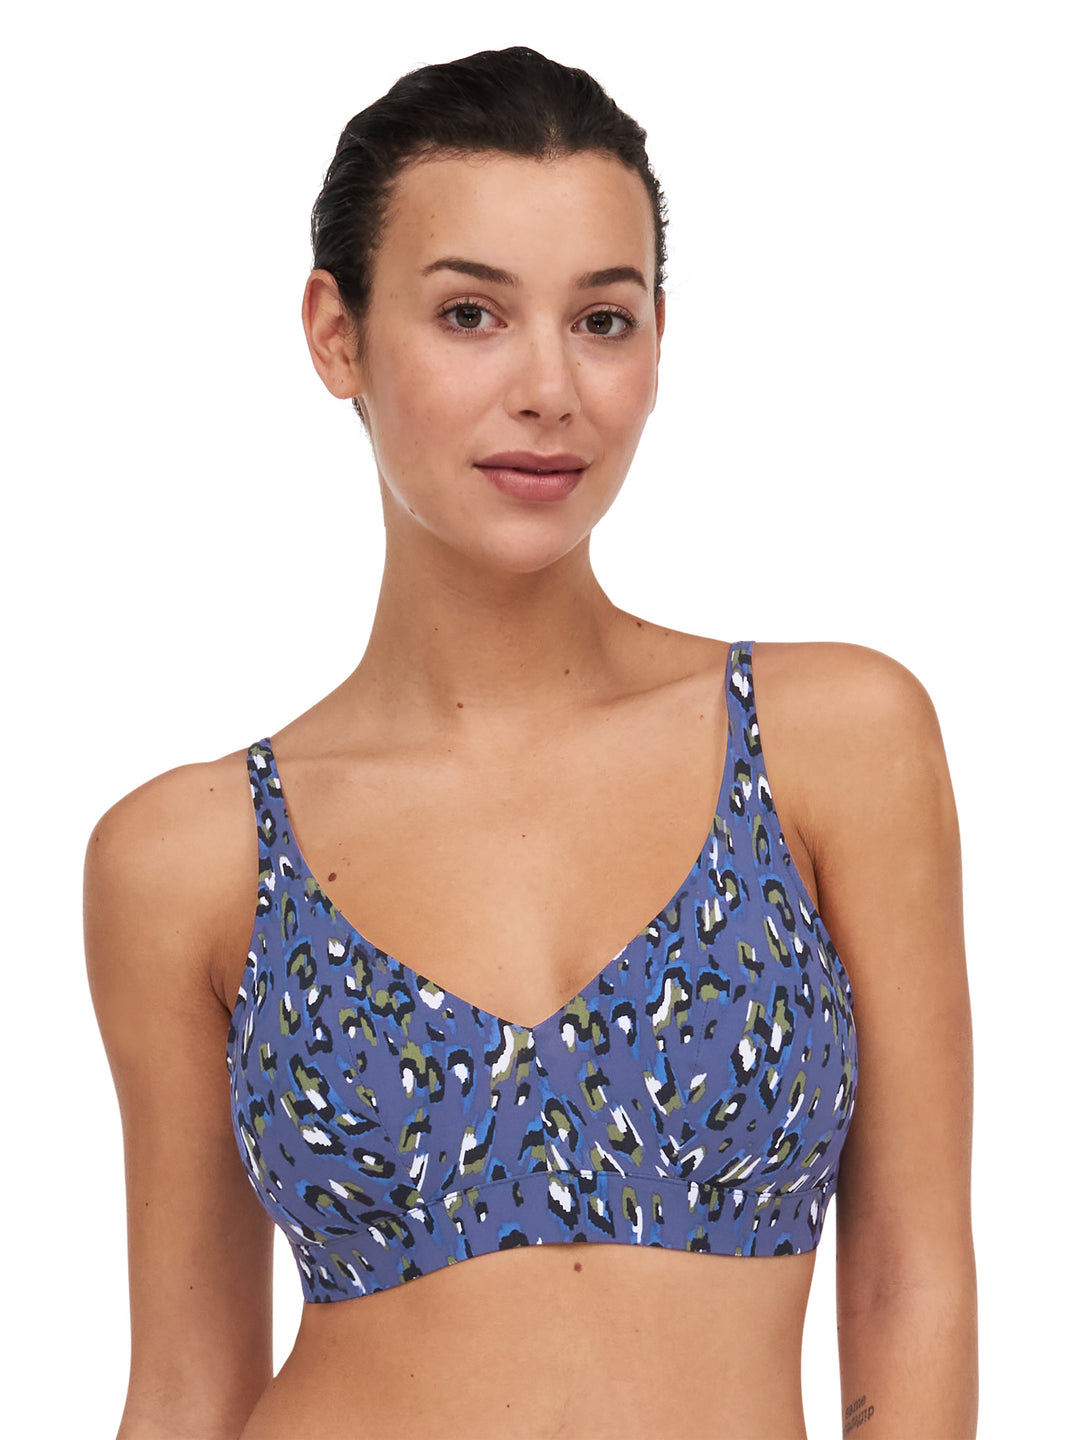 Chantelle Traje de baño Bikini estilo camiseta escotado sin aros Eos - Bikini escotado de leopardo azul Chantelle